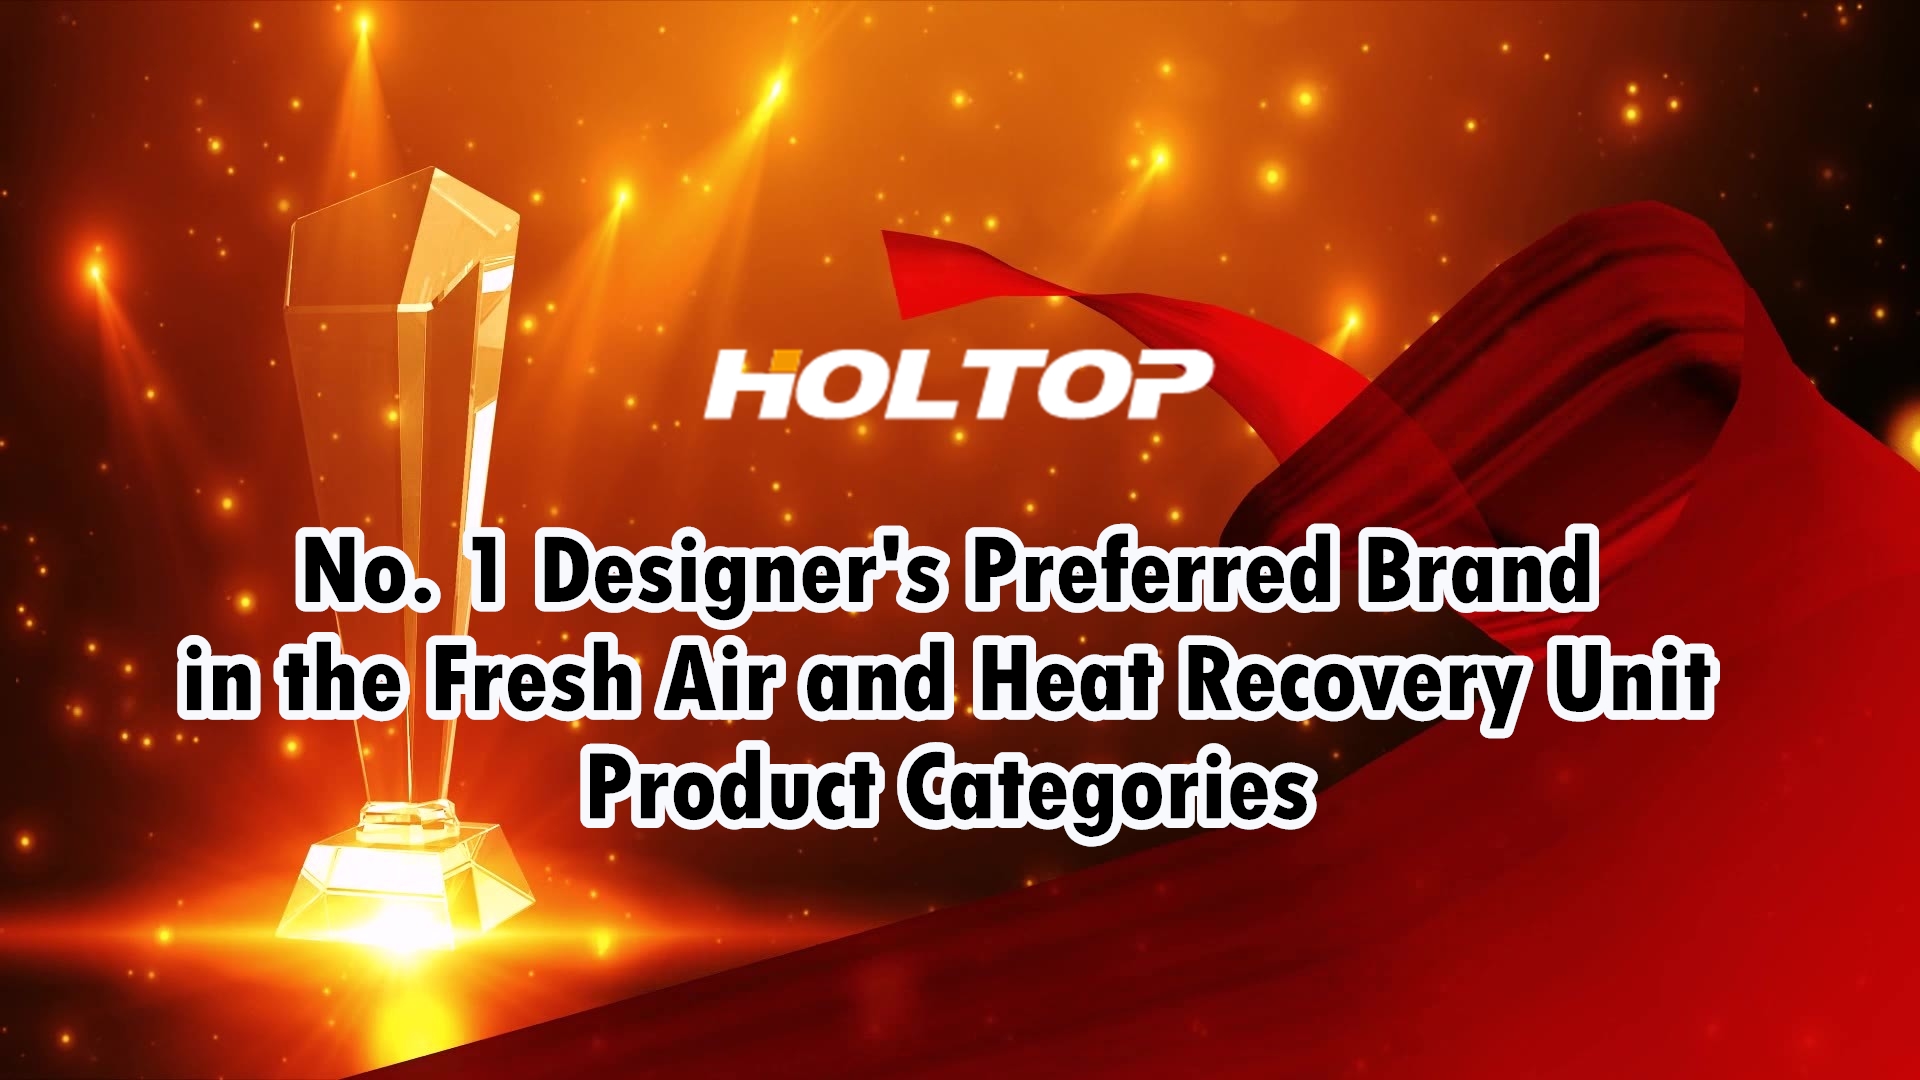 HOLTOP is het voorkeursmerk van de nr. 1 ontwerper in de productcategorieën voor verse lucht en warmteterugwinning op de Chinese markt